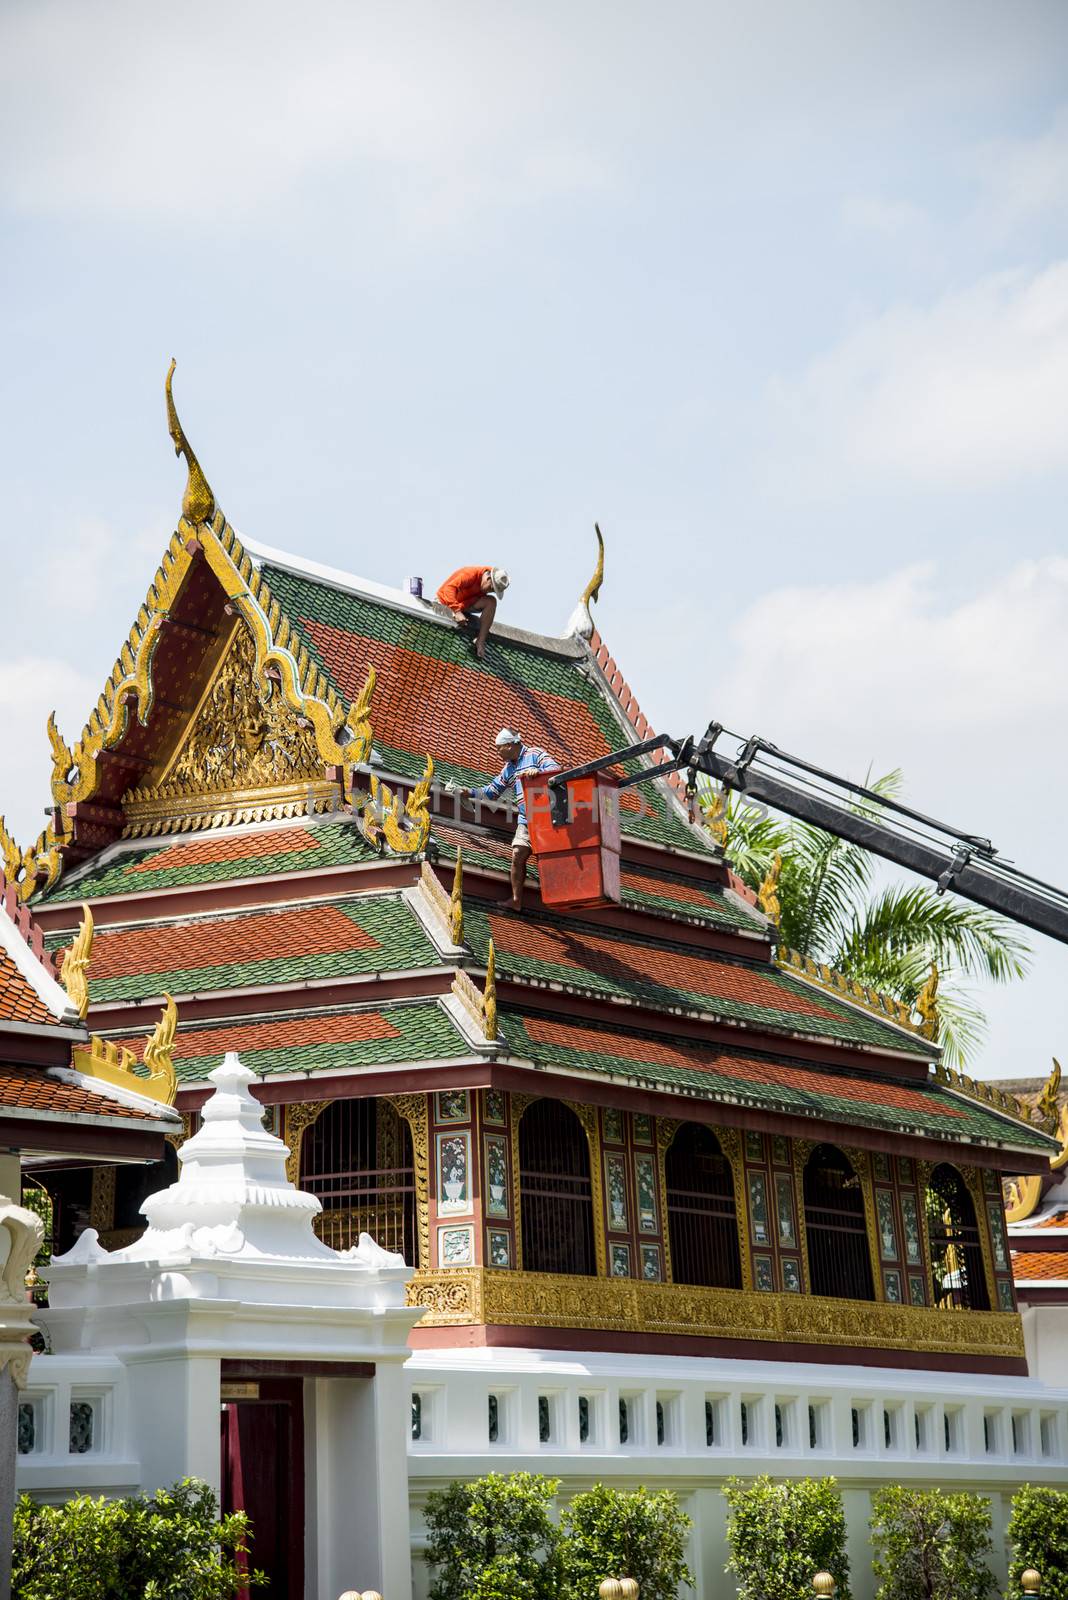 Men repair roof of Temple1